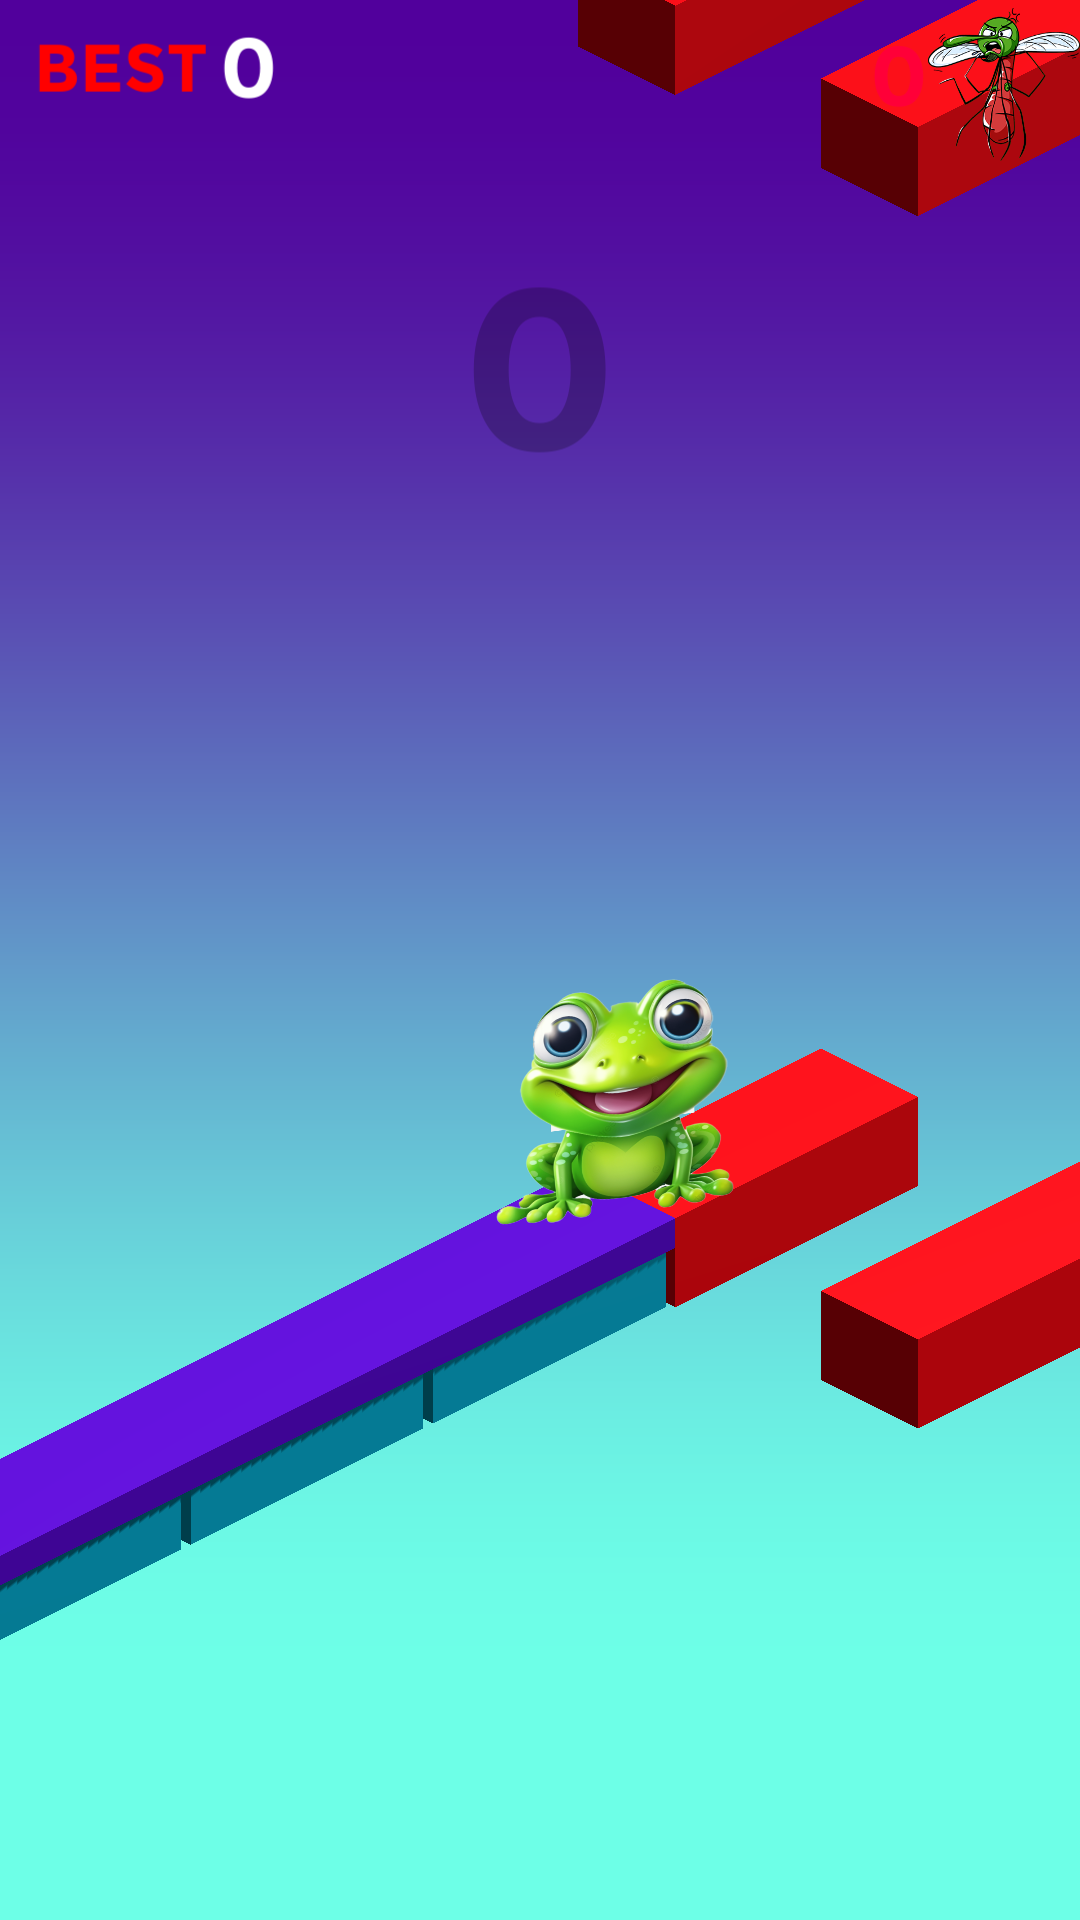 Frog Hustles screenshot game